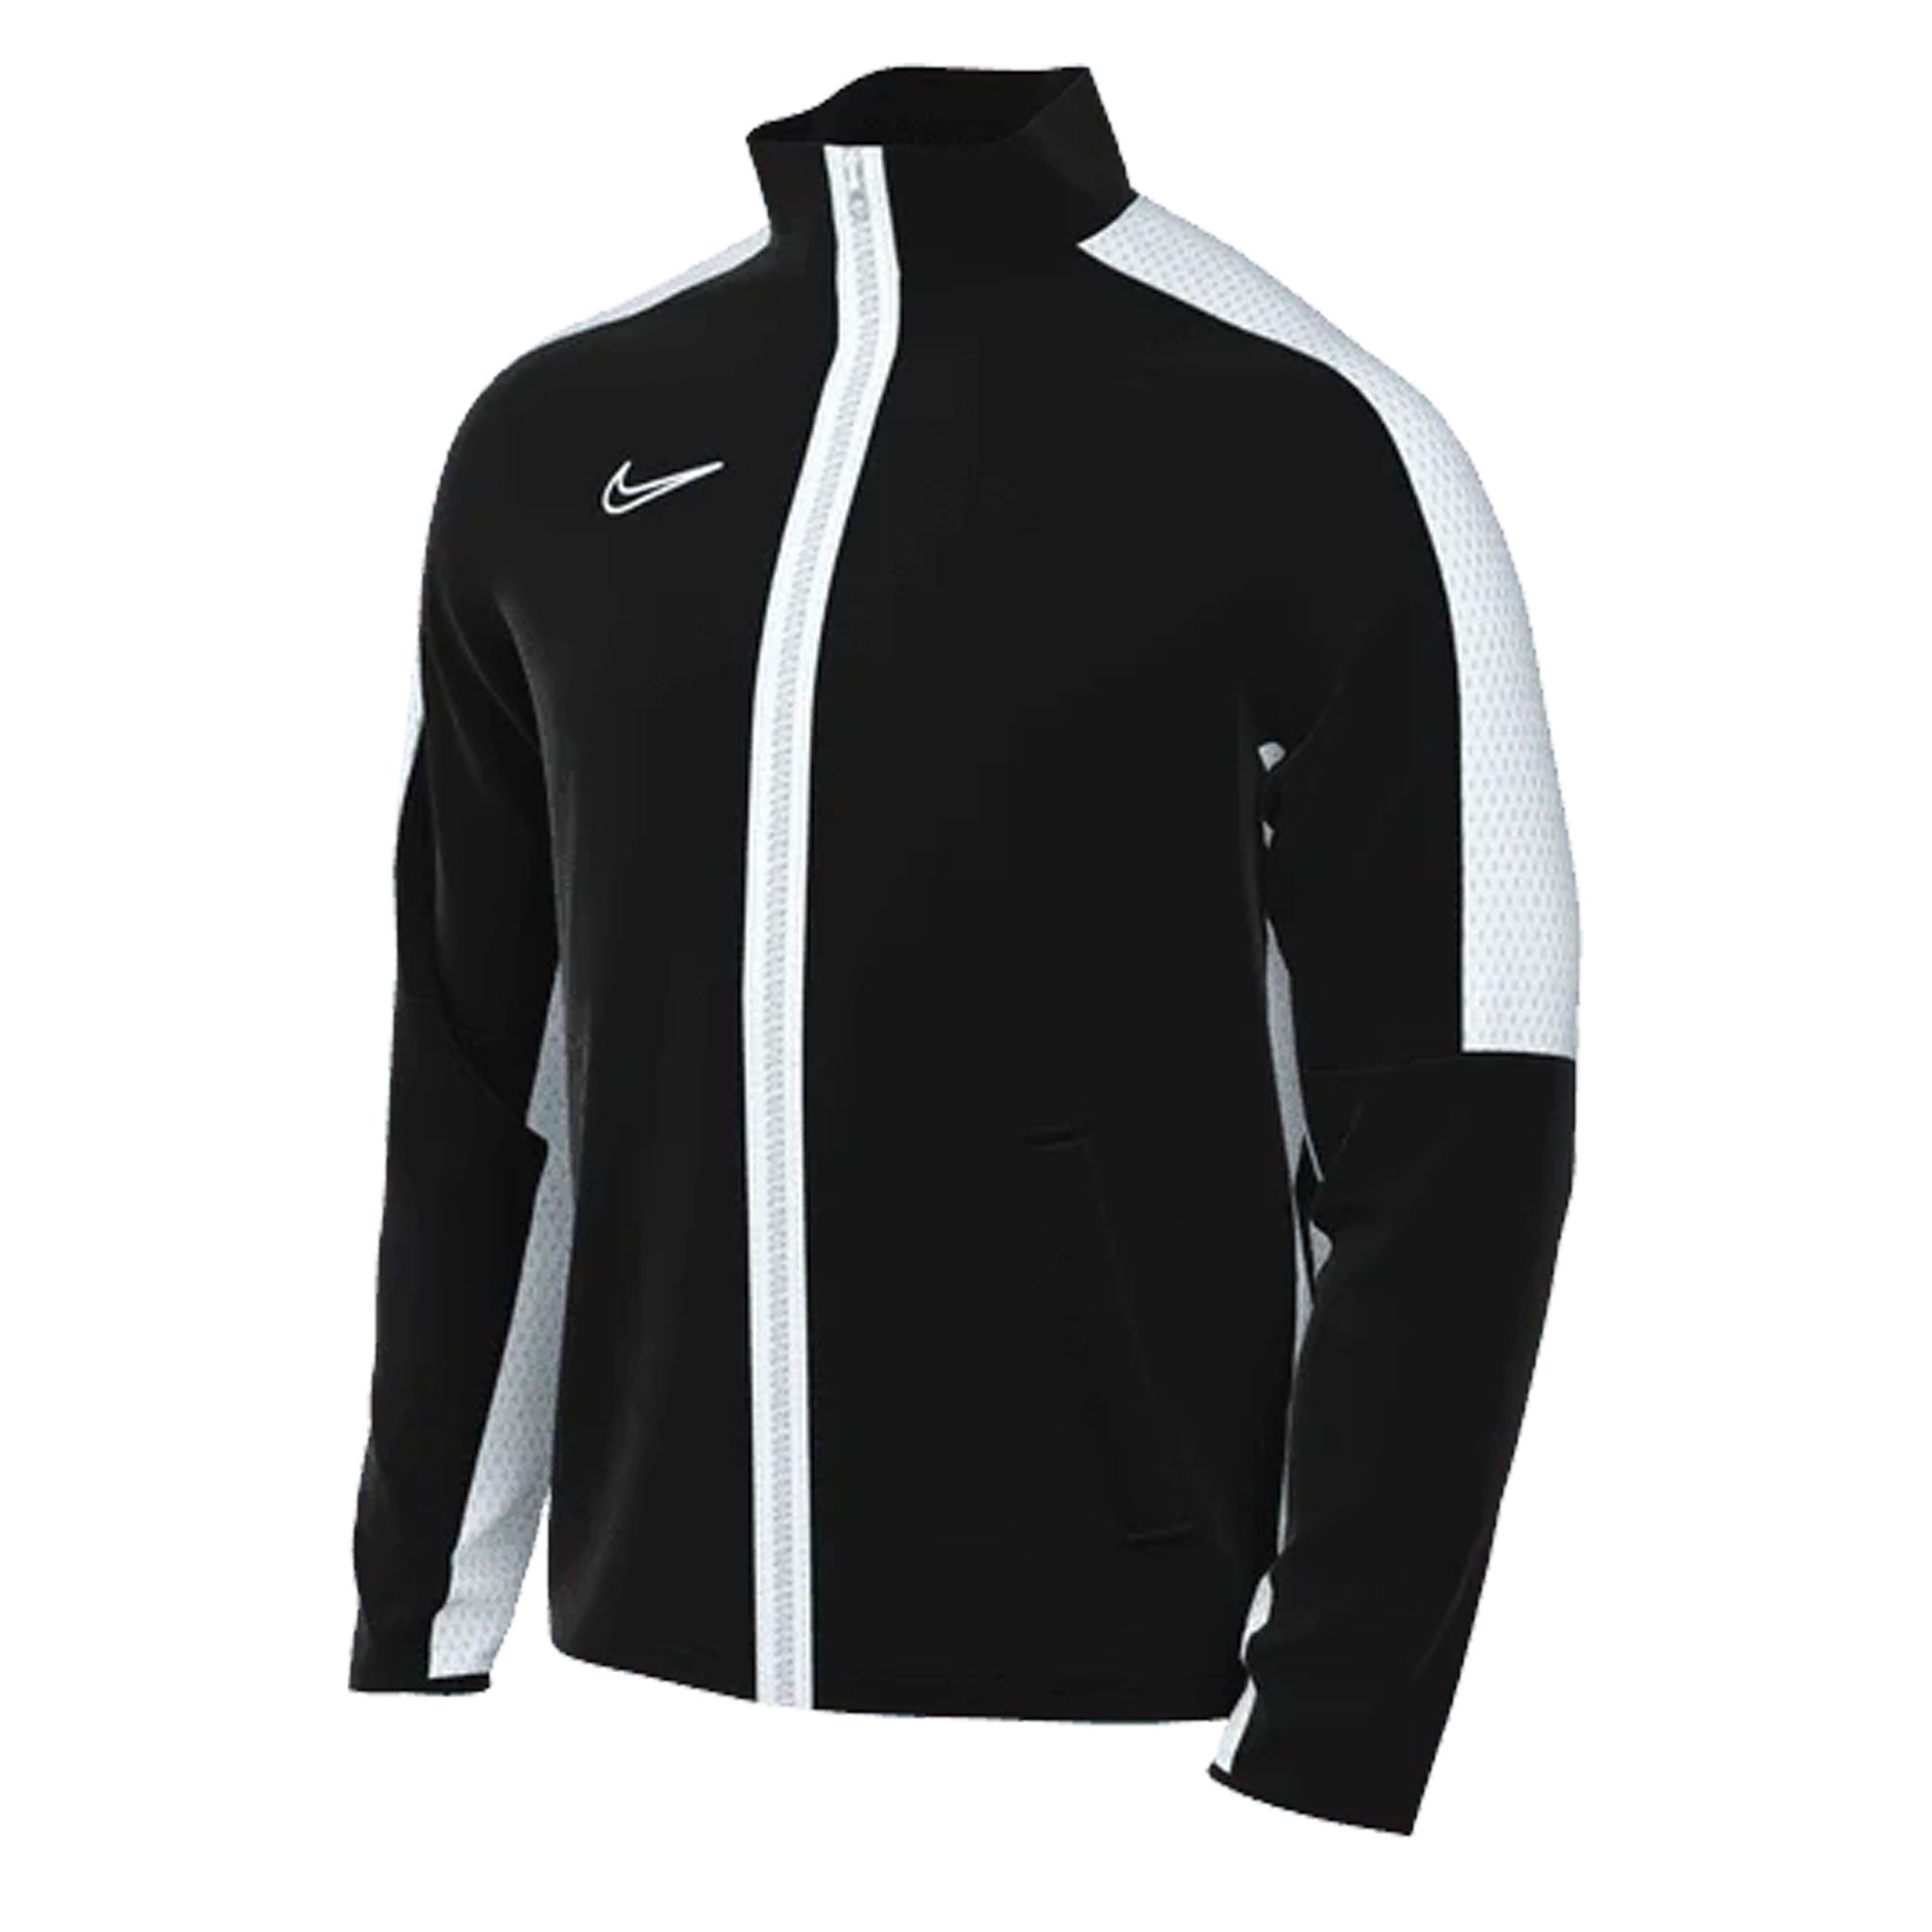 Nike | Jackets & Coats | Nike Vintage Windbreaker Jacket Black White Xl |  Poshmark